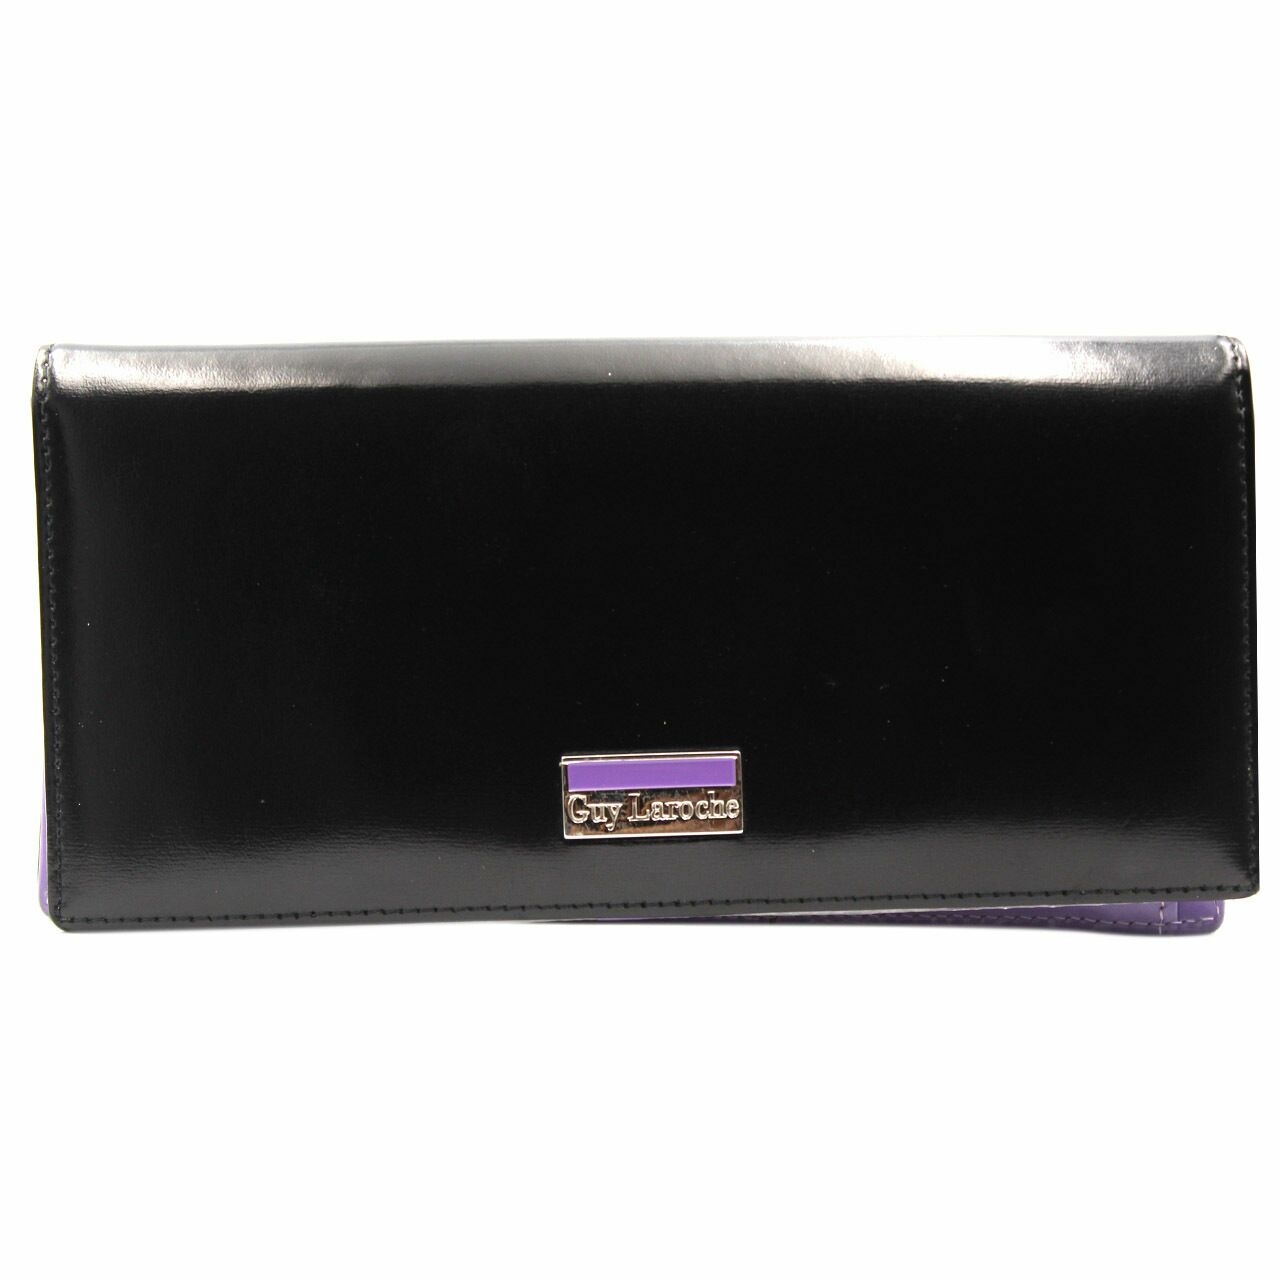 Guy Laroche Black & Purple Wallet